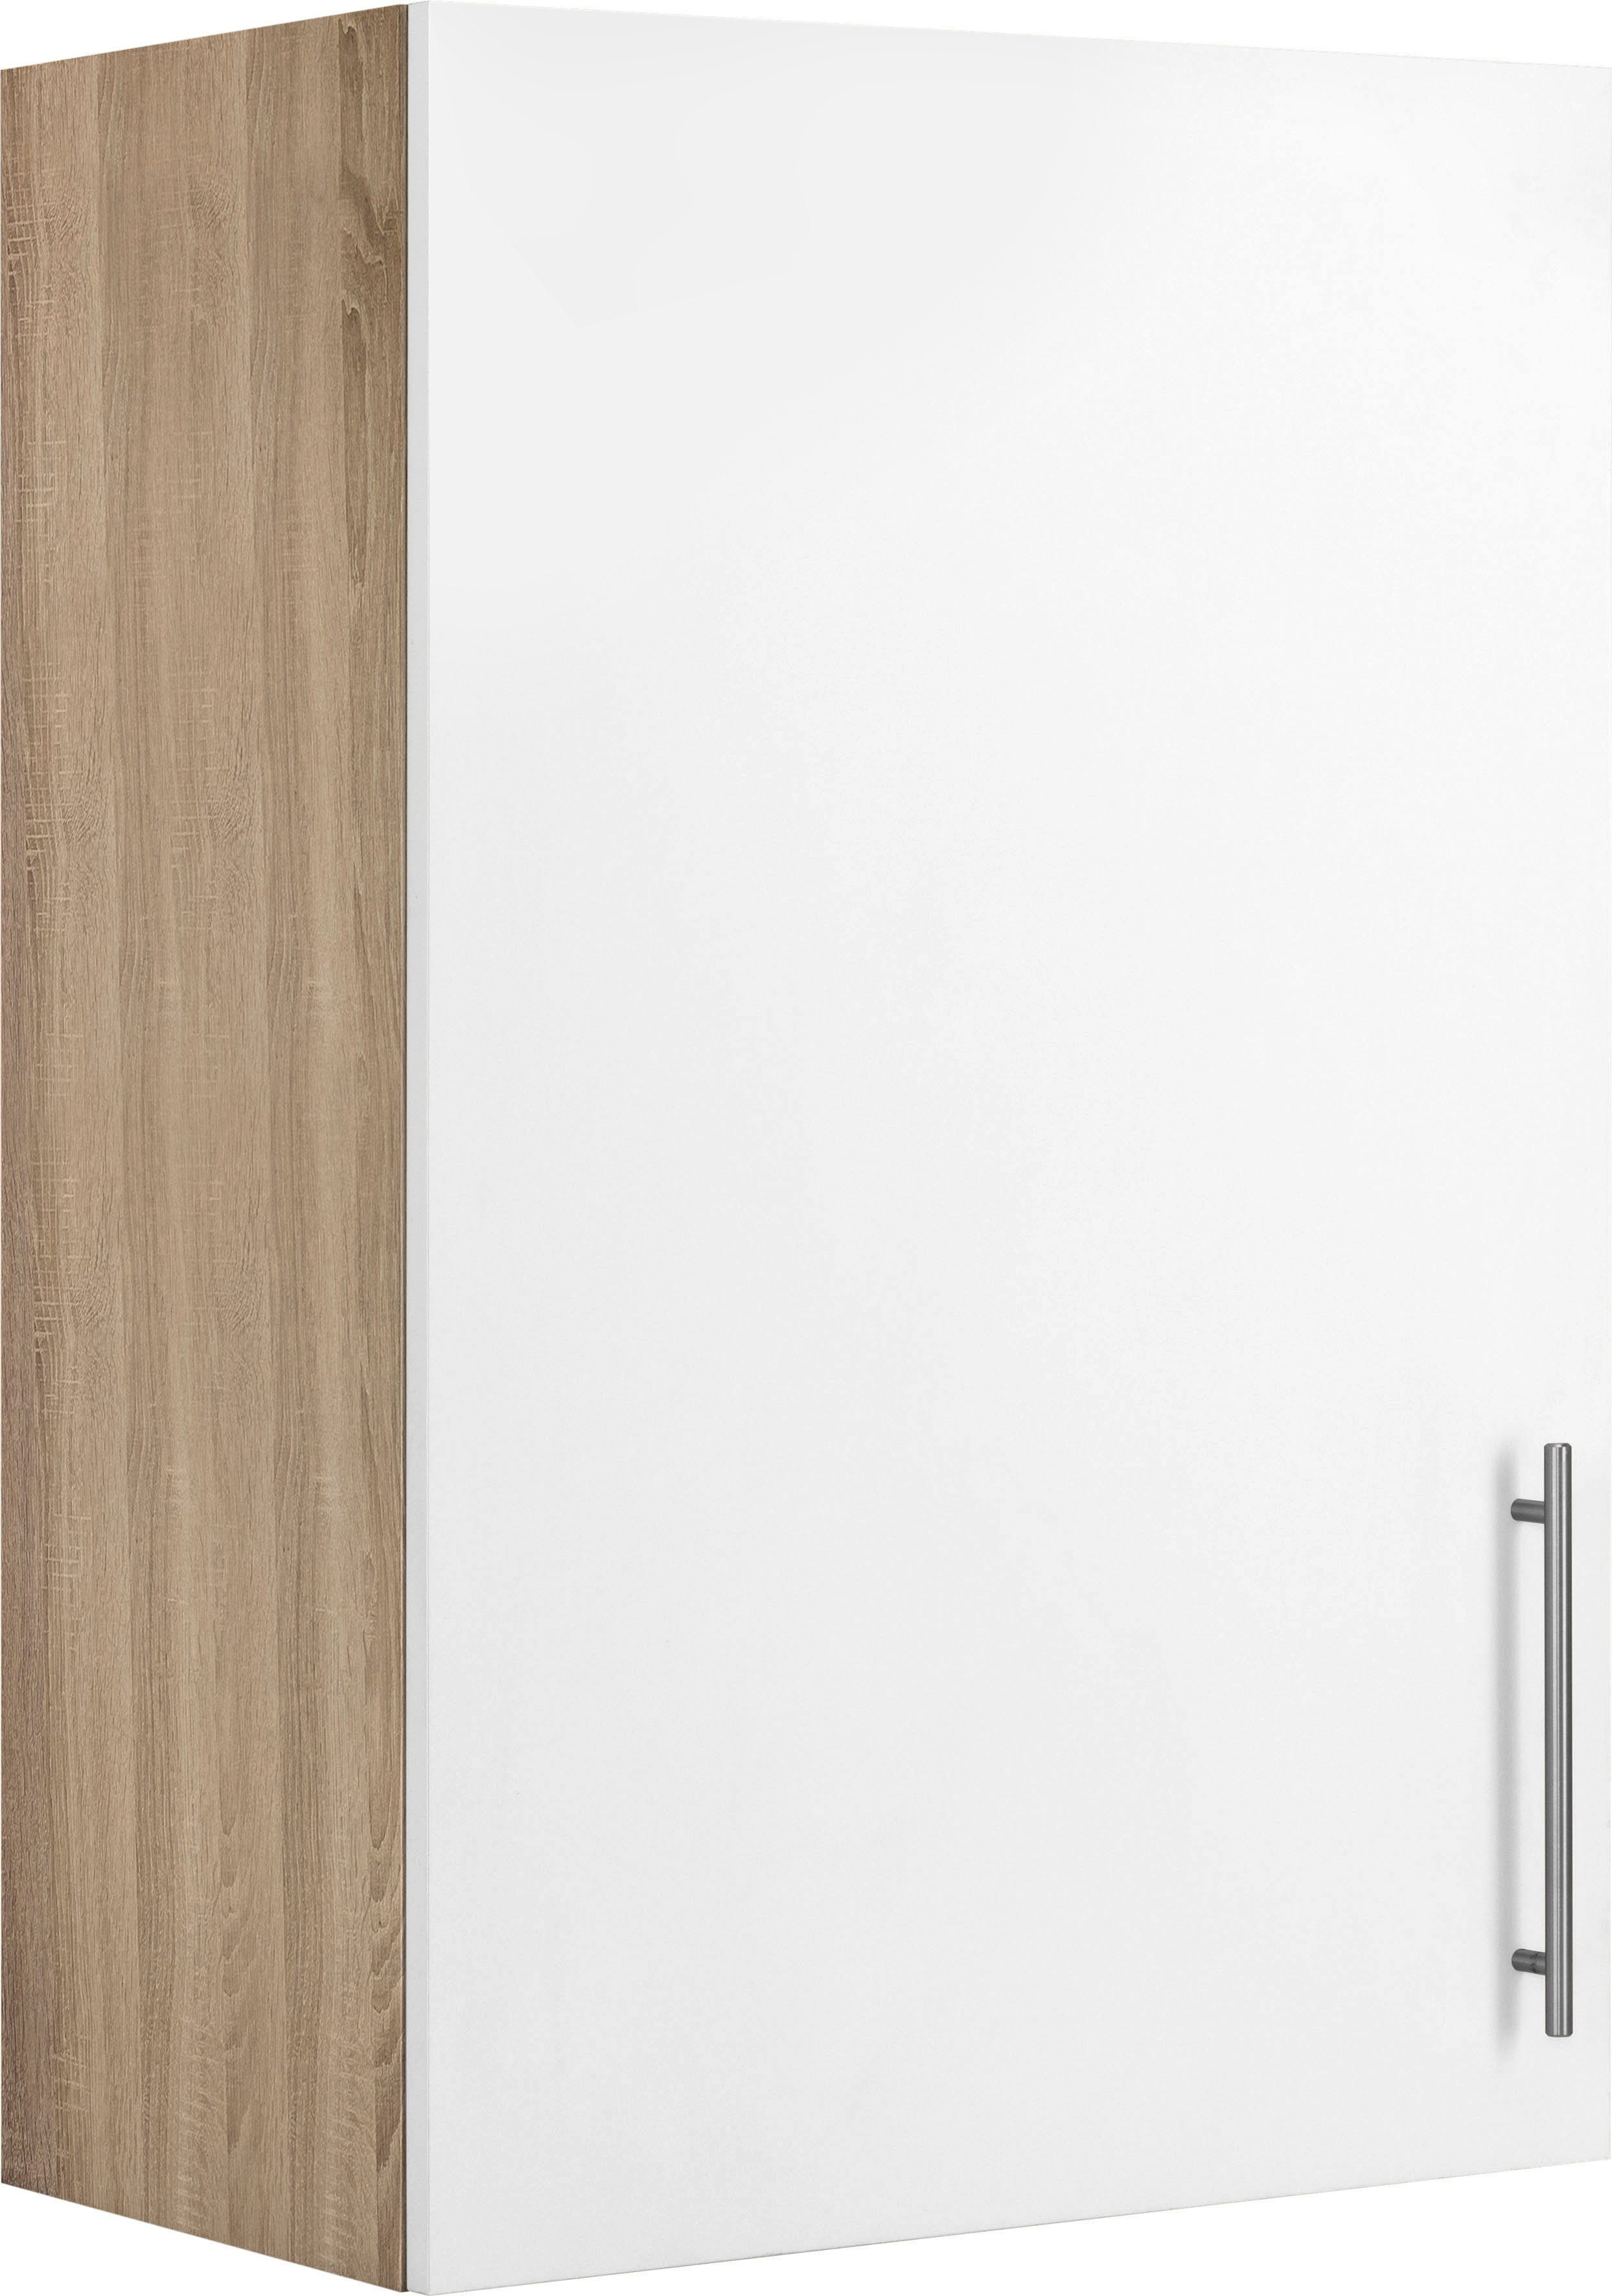 wiho Küchen Hängeschrank Cali 60 cm breit, 90 cm hoch Front: Weiß matt, Korpus: Sonoma eichefarben | Eichefarben